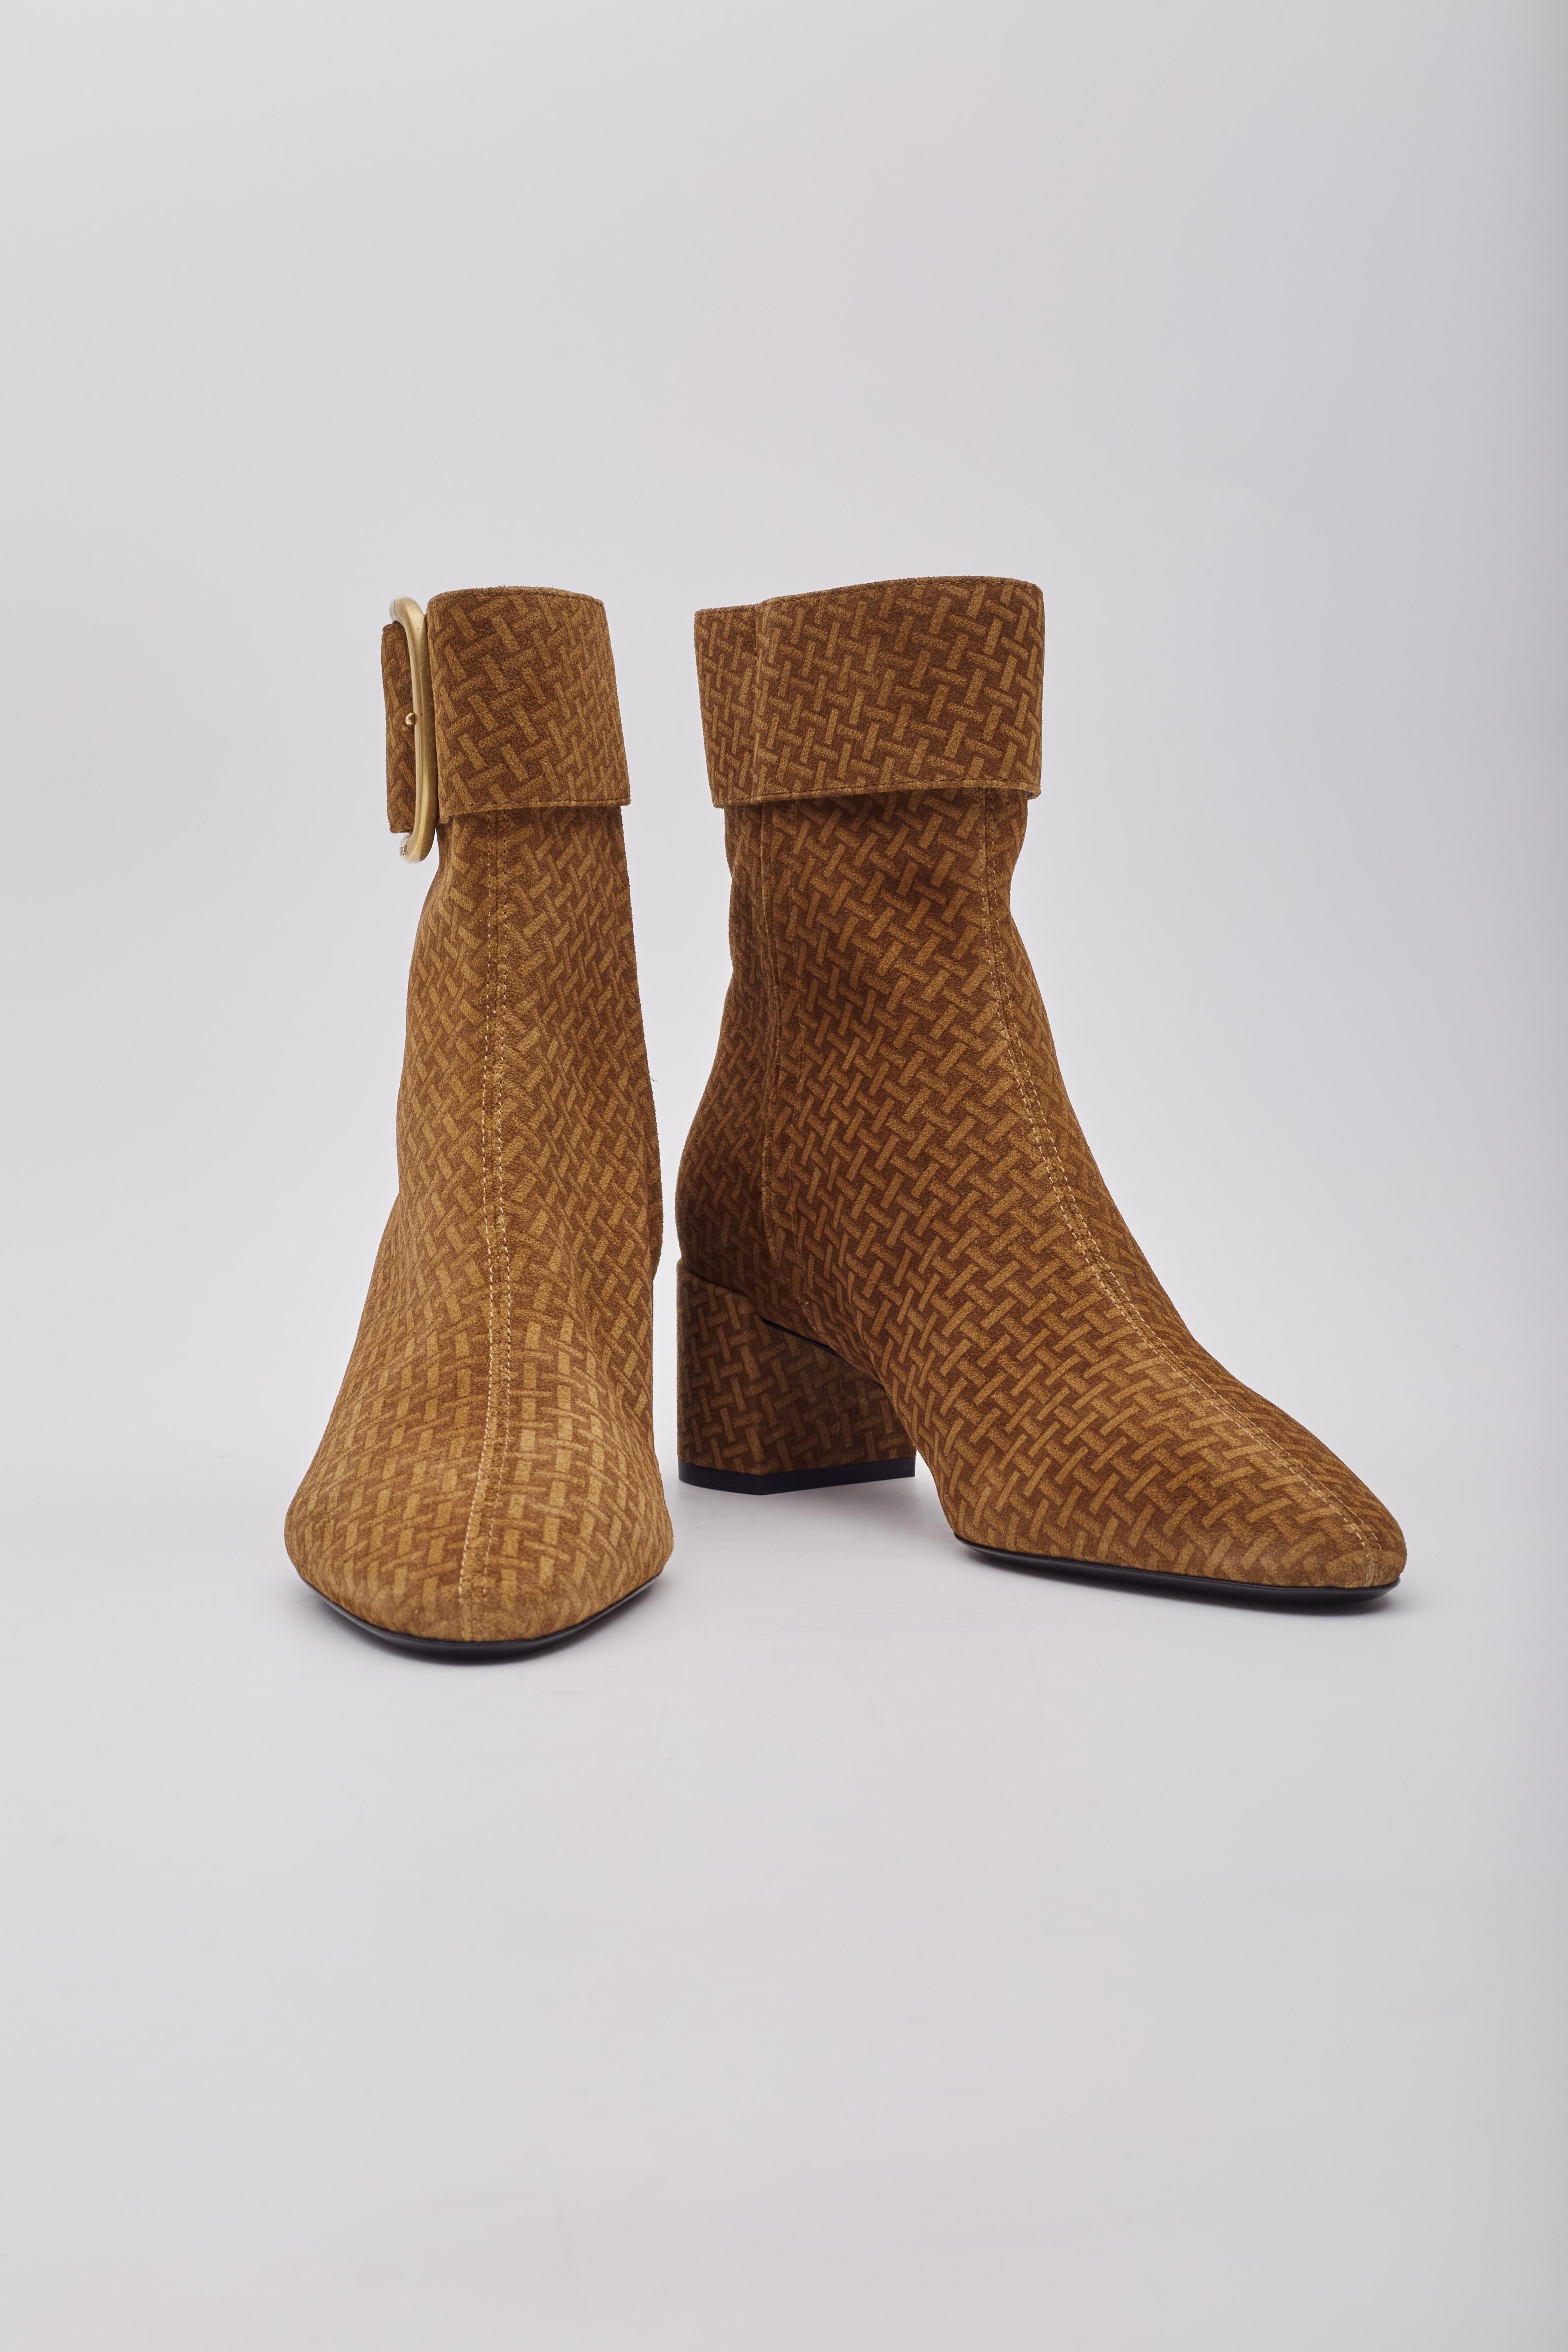 Die Saint Laurent Booties sind aus Wildleder gefertigt, haben ein Flechtmuster, das um den Schuh herum aufgedruckt ist, eine mandelförmige Schuhspitze, eine Schnalle und einen Reißverschluss mit Gravur auf der Schnalle und einen 50 mm hohen